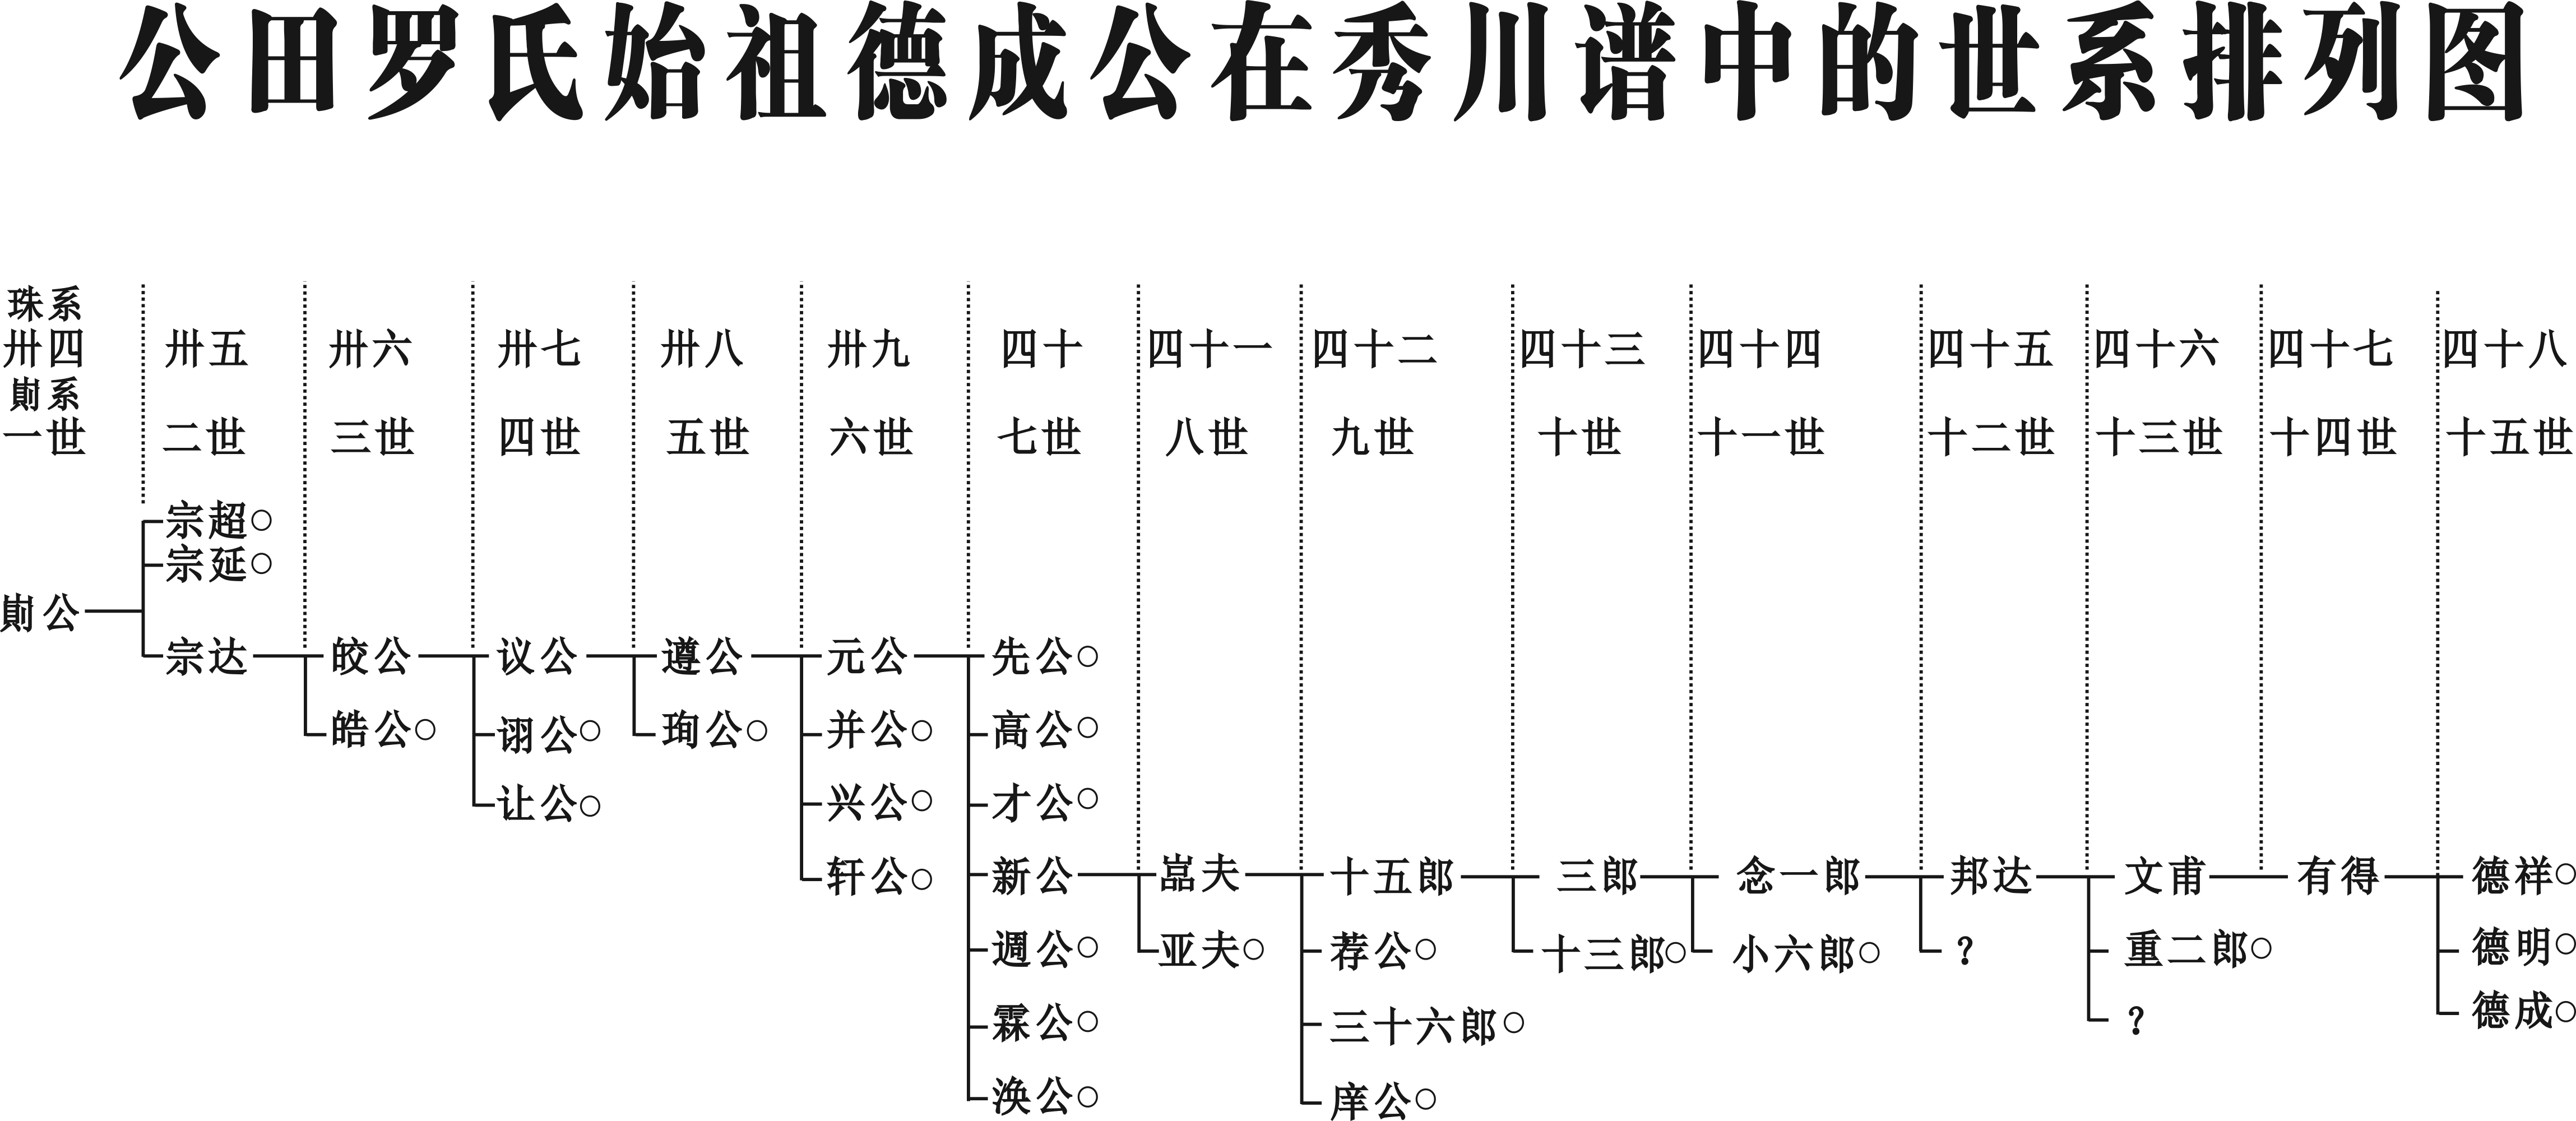 公田罗氏始祖德成公在秀川谱中的世系排列图